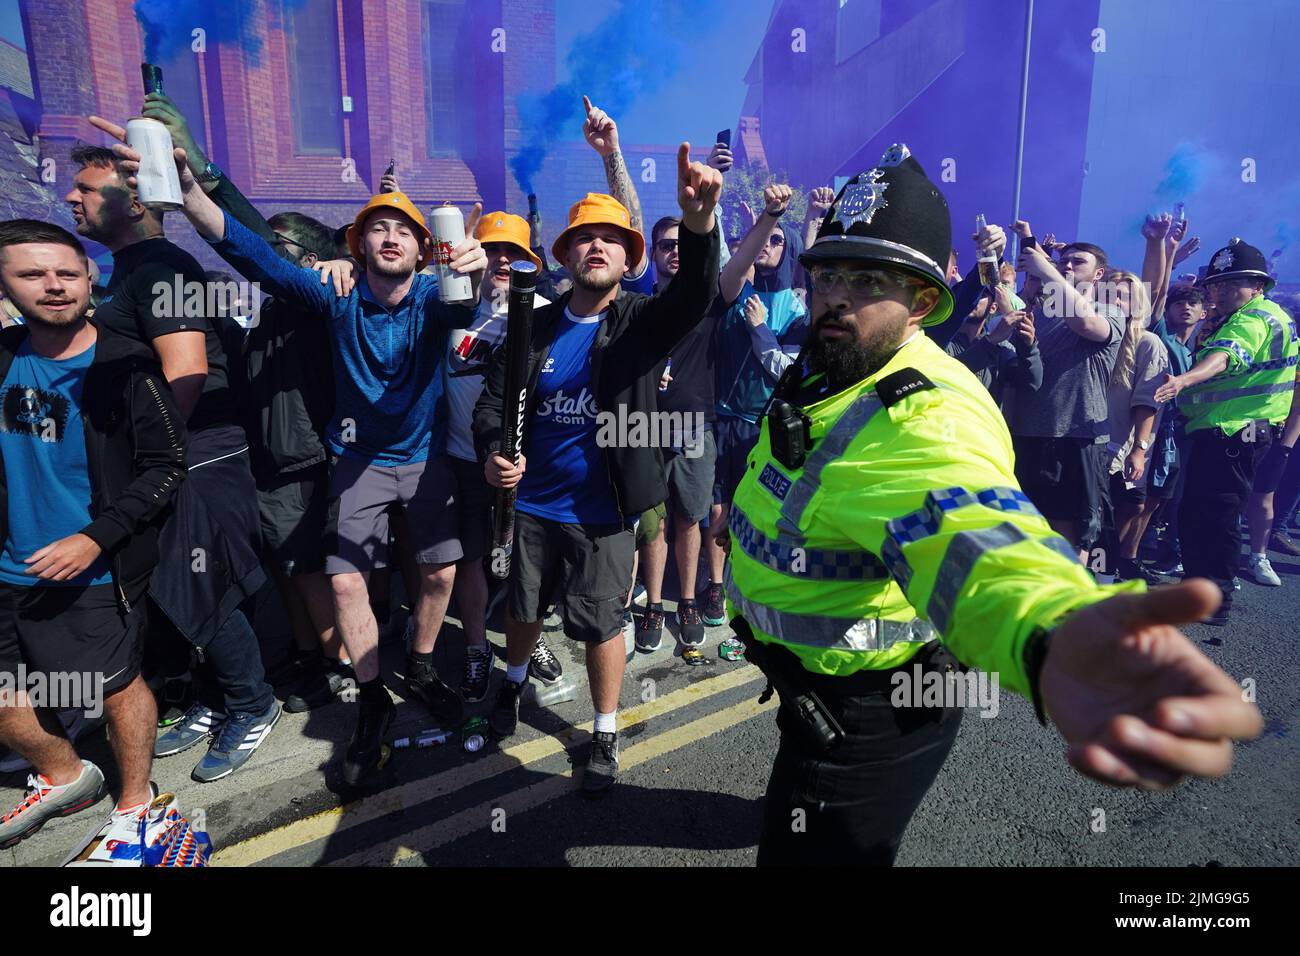 Polizeibeamte und Menschenmengen vor dem Stadion vor dem Spiel der Premier League im Goodison Park, Liverpool. Bilddatum: Samstag, 6. August 2022. Stockfoto